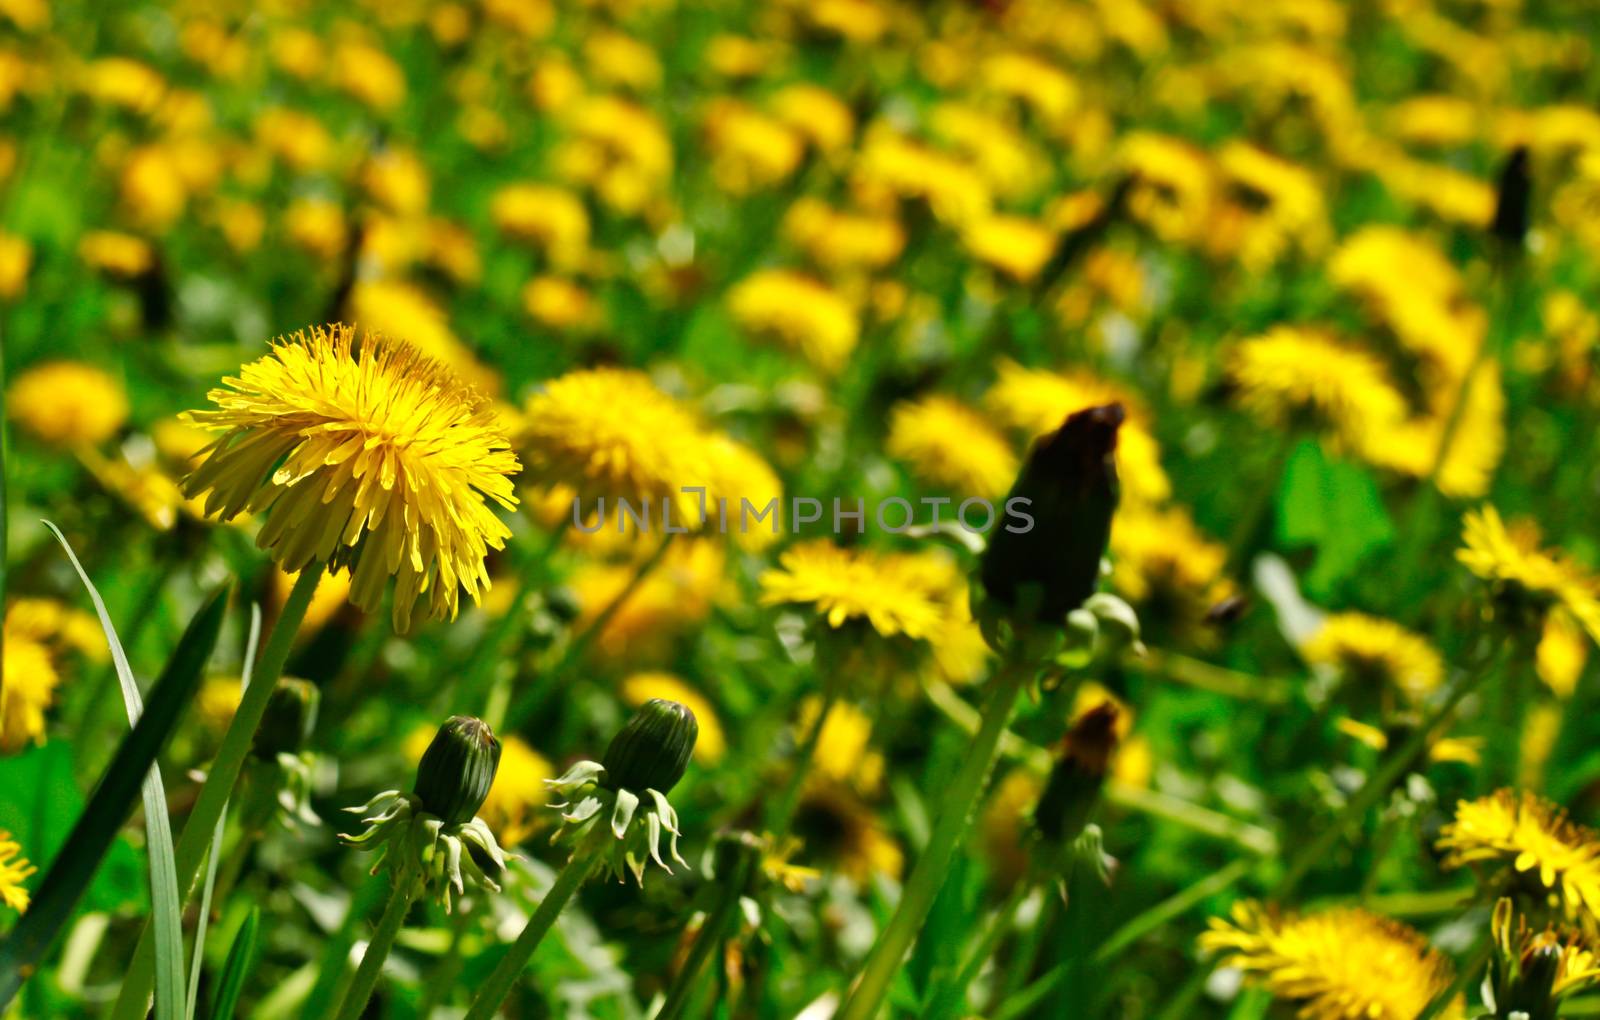 meadow of dandelions by aziatik13